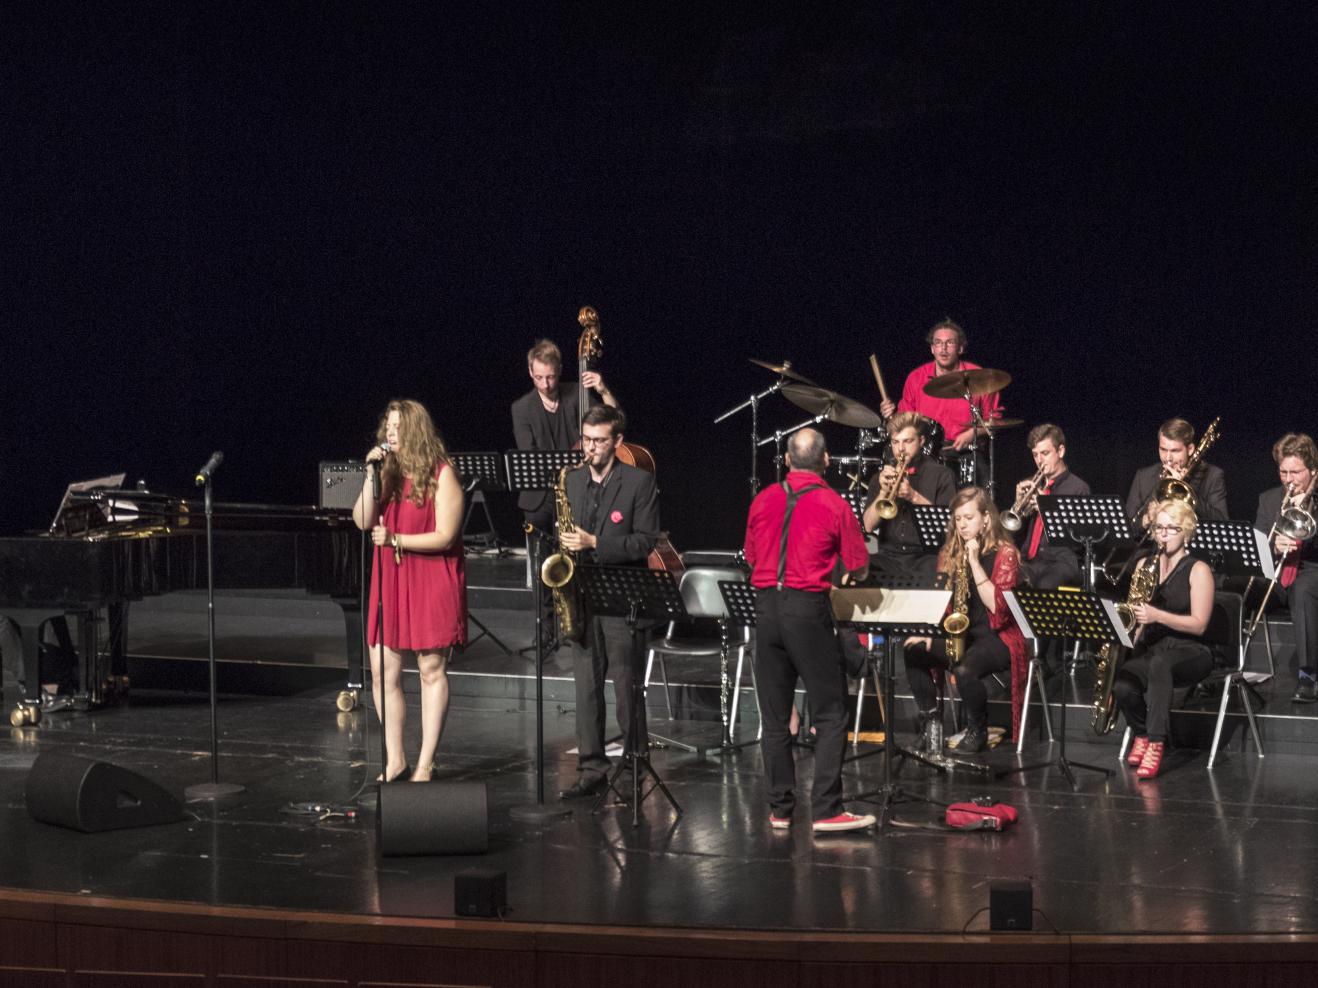 Die Mitglieder der Concert Jazzband auf der Bühne, die Sängerin vorne im roten Kleid, ansonsten fast alle schwarz gekleidet.